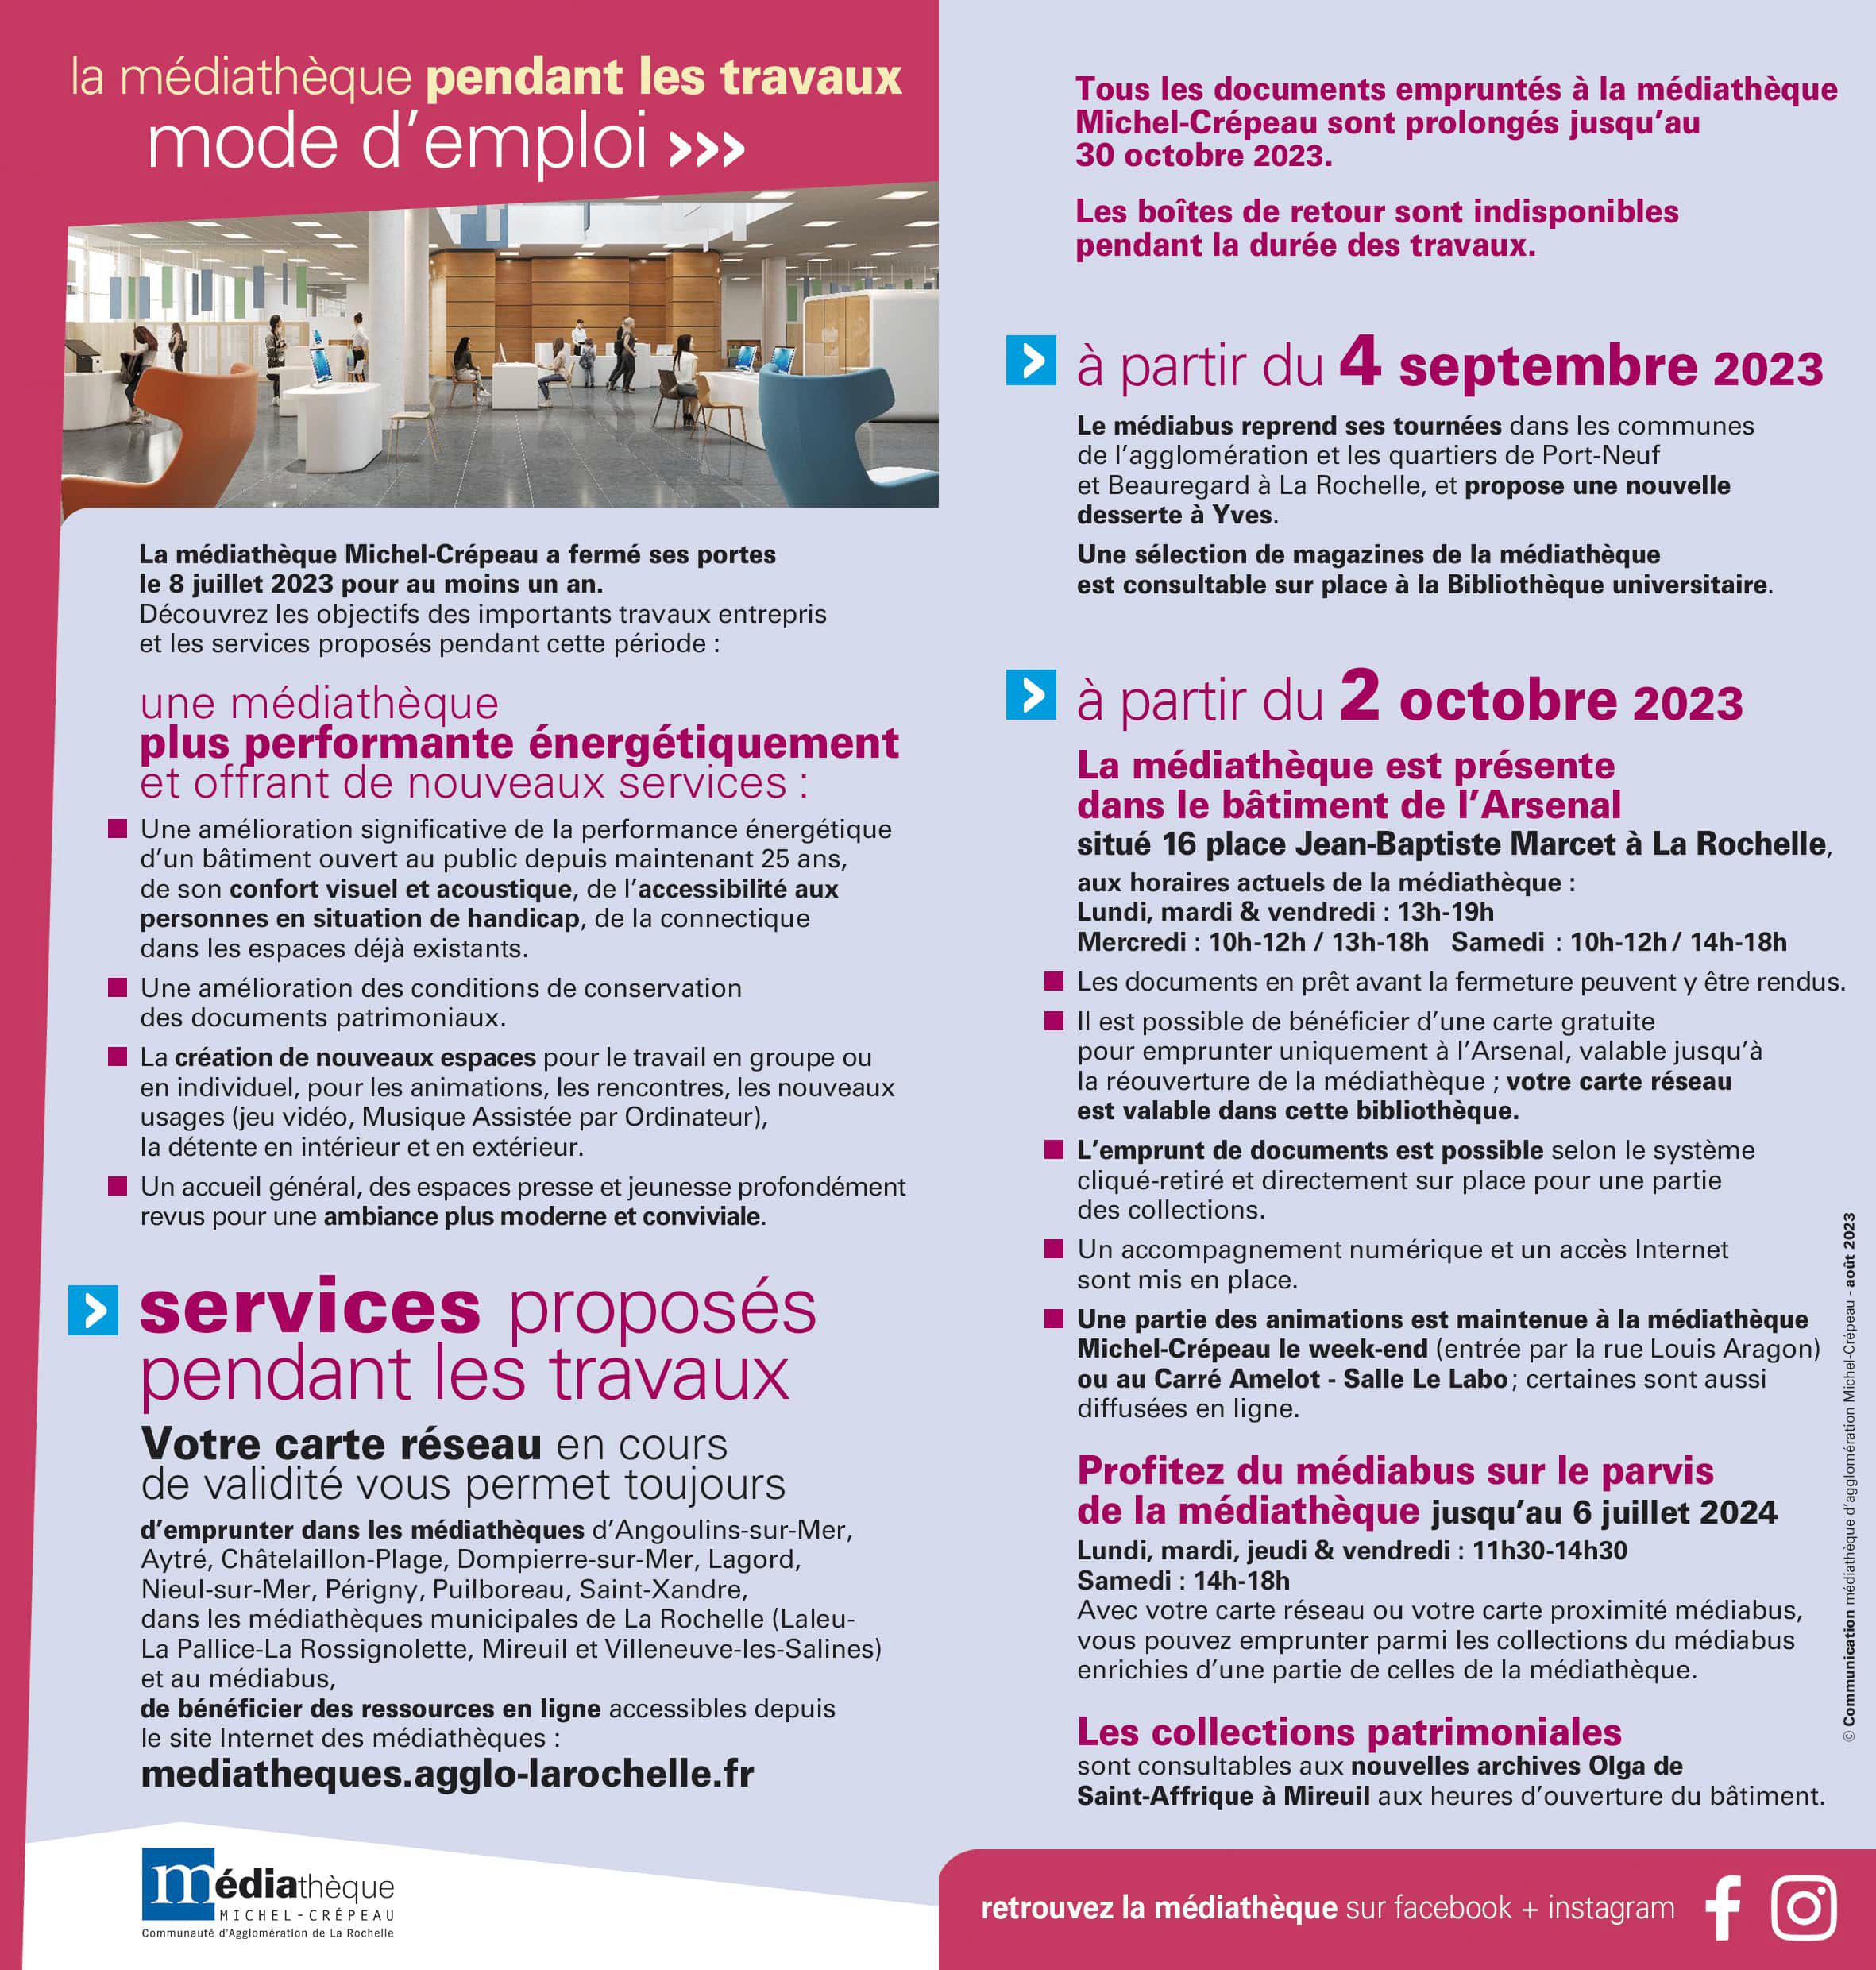 Brochure mode d'emploi de la médiathèque pendant les travauux, de septembre 2023 à juillet 2024